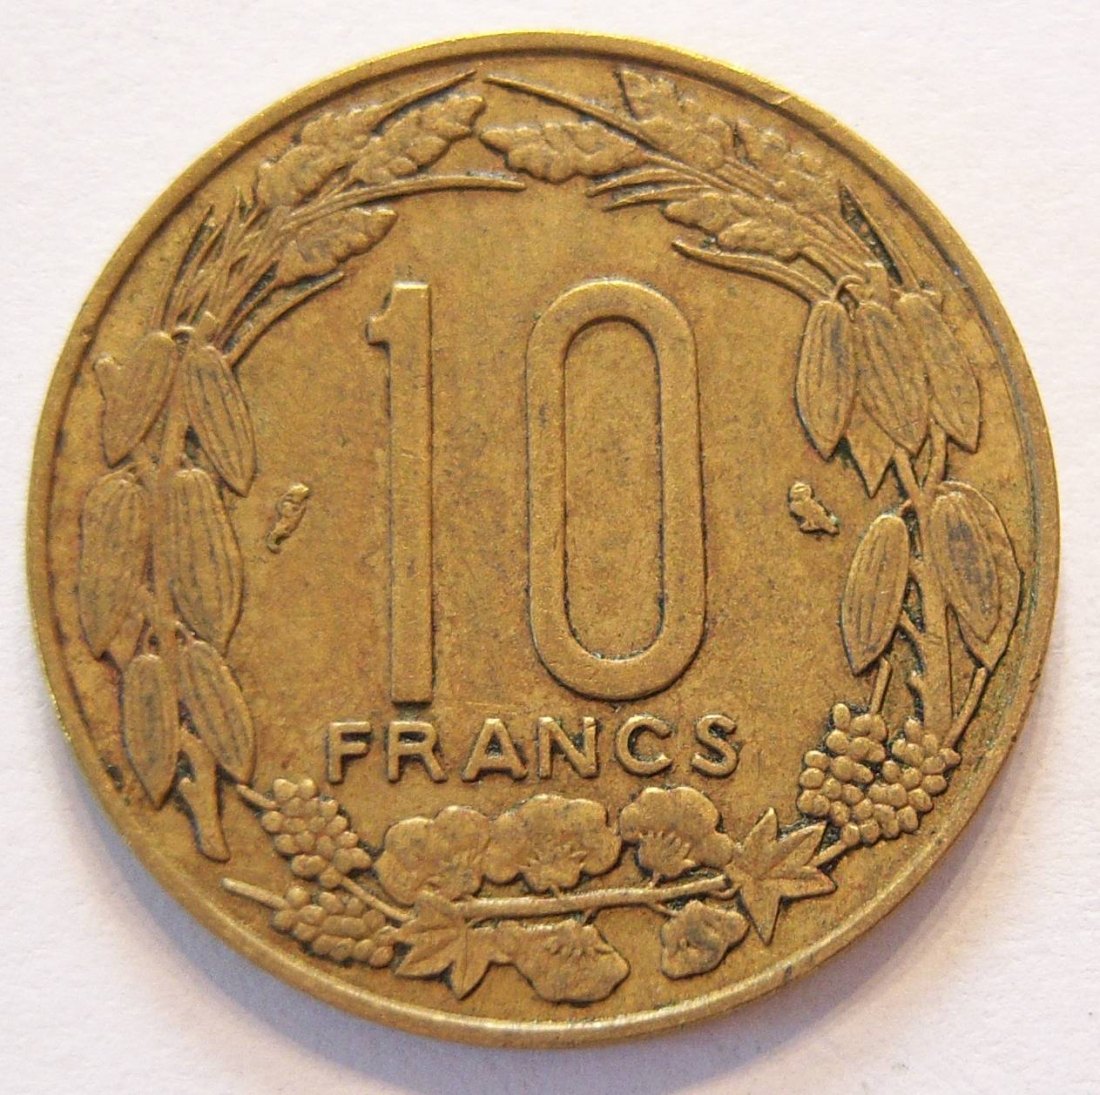  Äquatorial Afrikanische Staaten 10 Francs 1967   